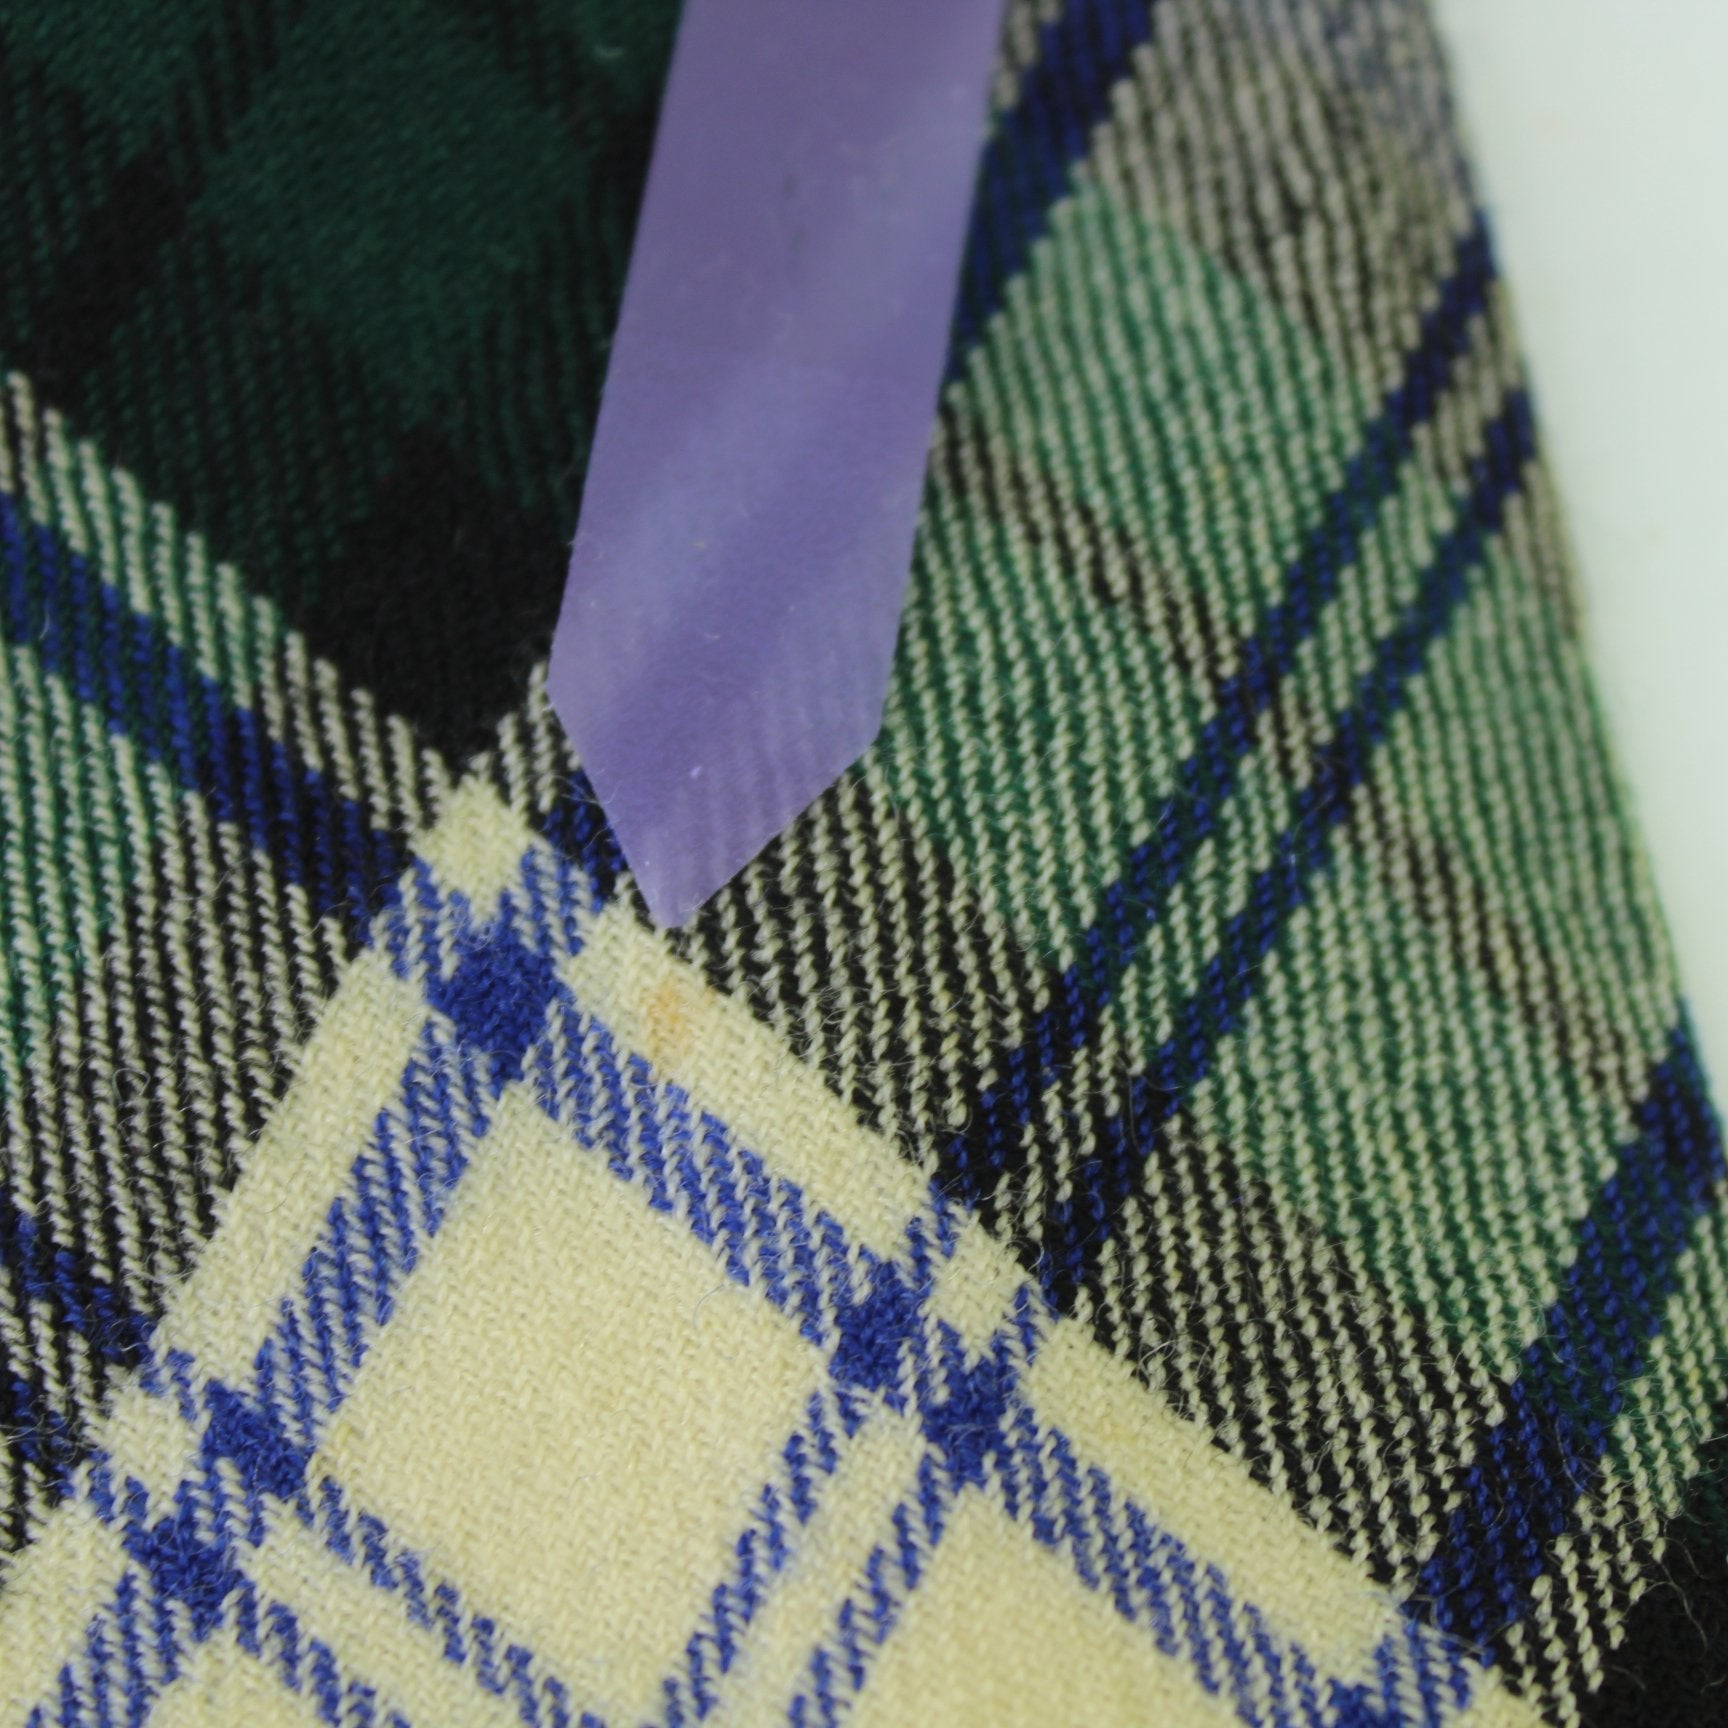 Kinloch Anderson Scotland Vintage Necktie Black Watch Wool 56" X 3 1/4" closeup stain